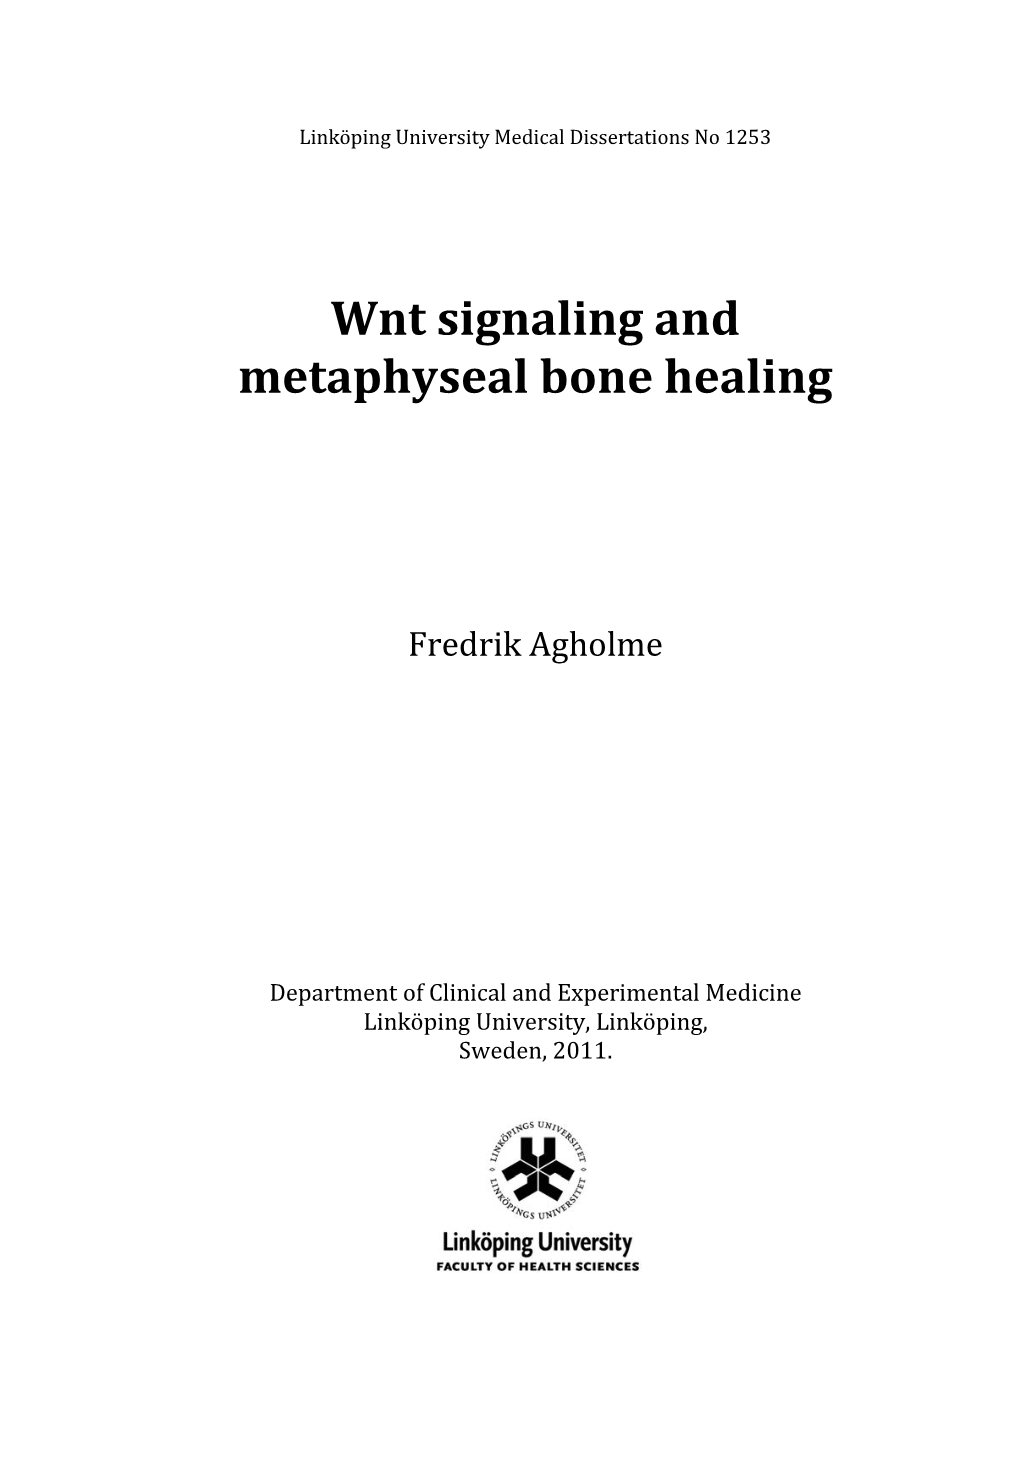 Wnt Signaling and Metaphyseal Bone Healing